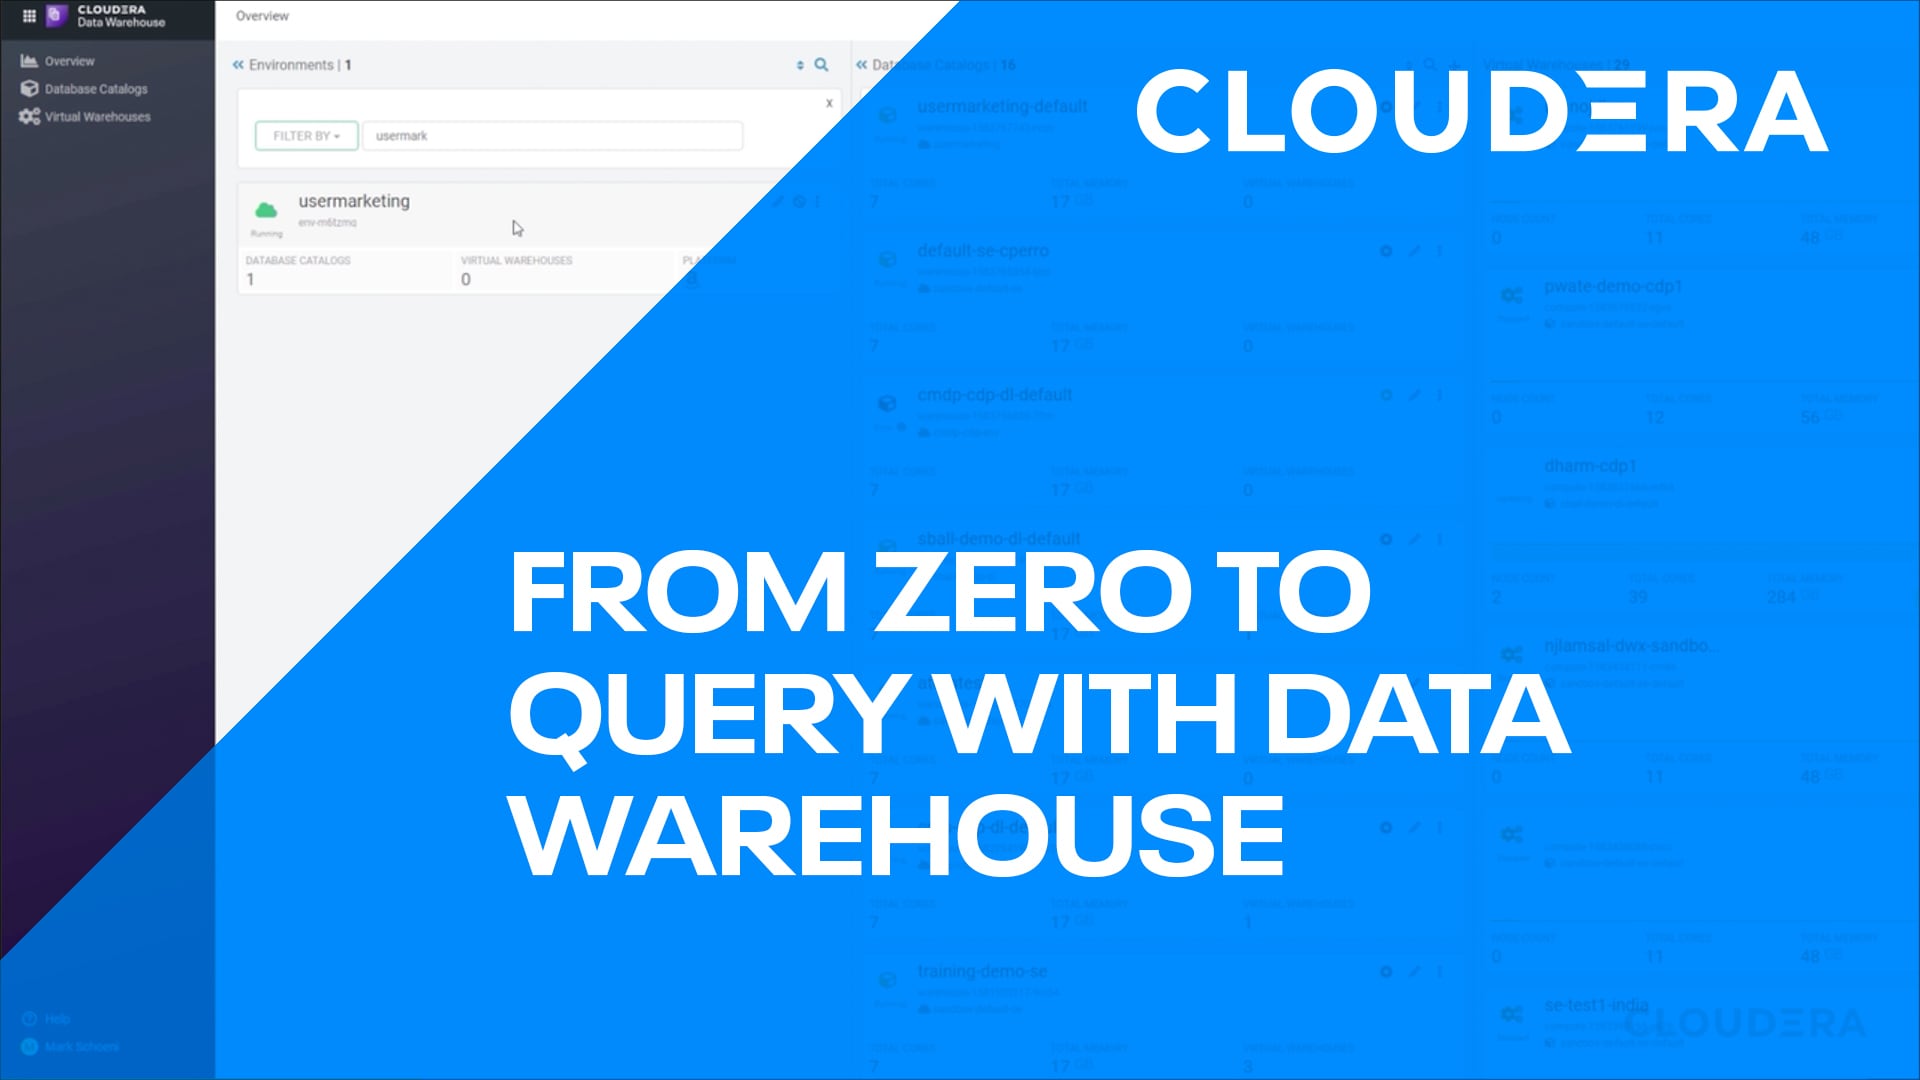 Abfragen in kürzester Zeit – mit dem Cloudera Data Warehouse